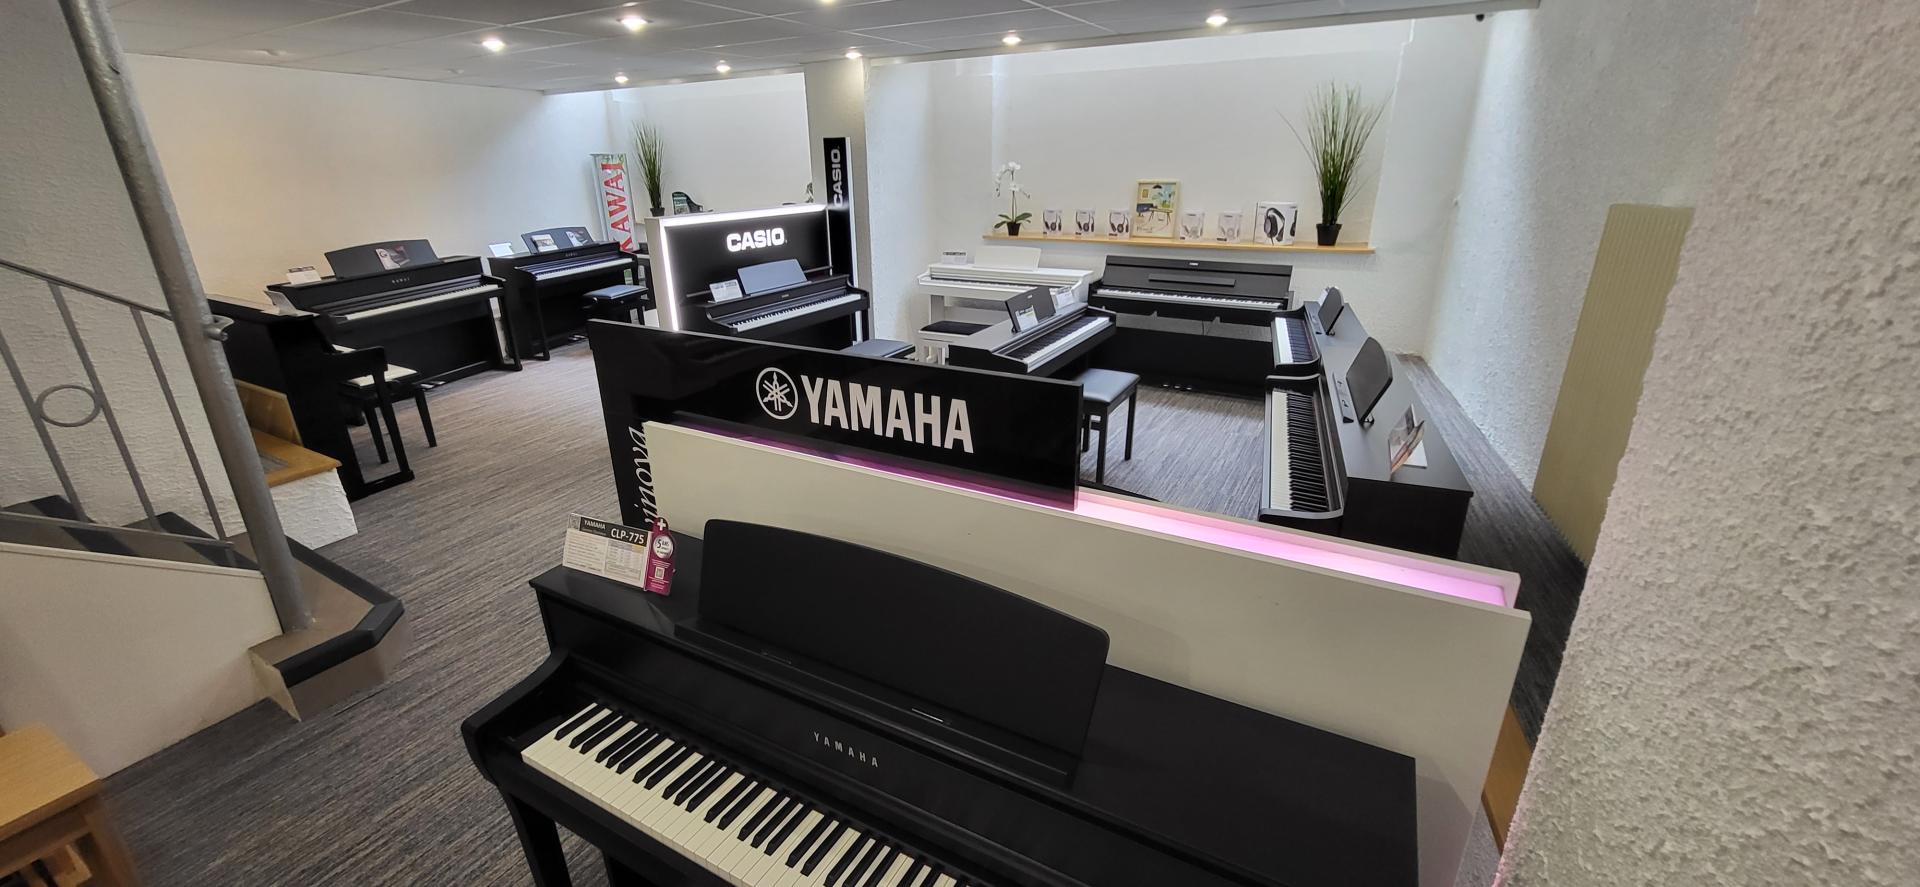 Maison GALLAND spécialiste des pianos numériques